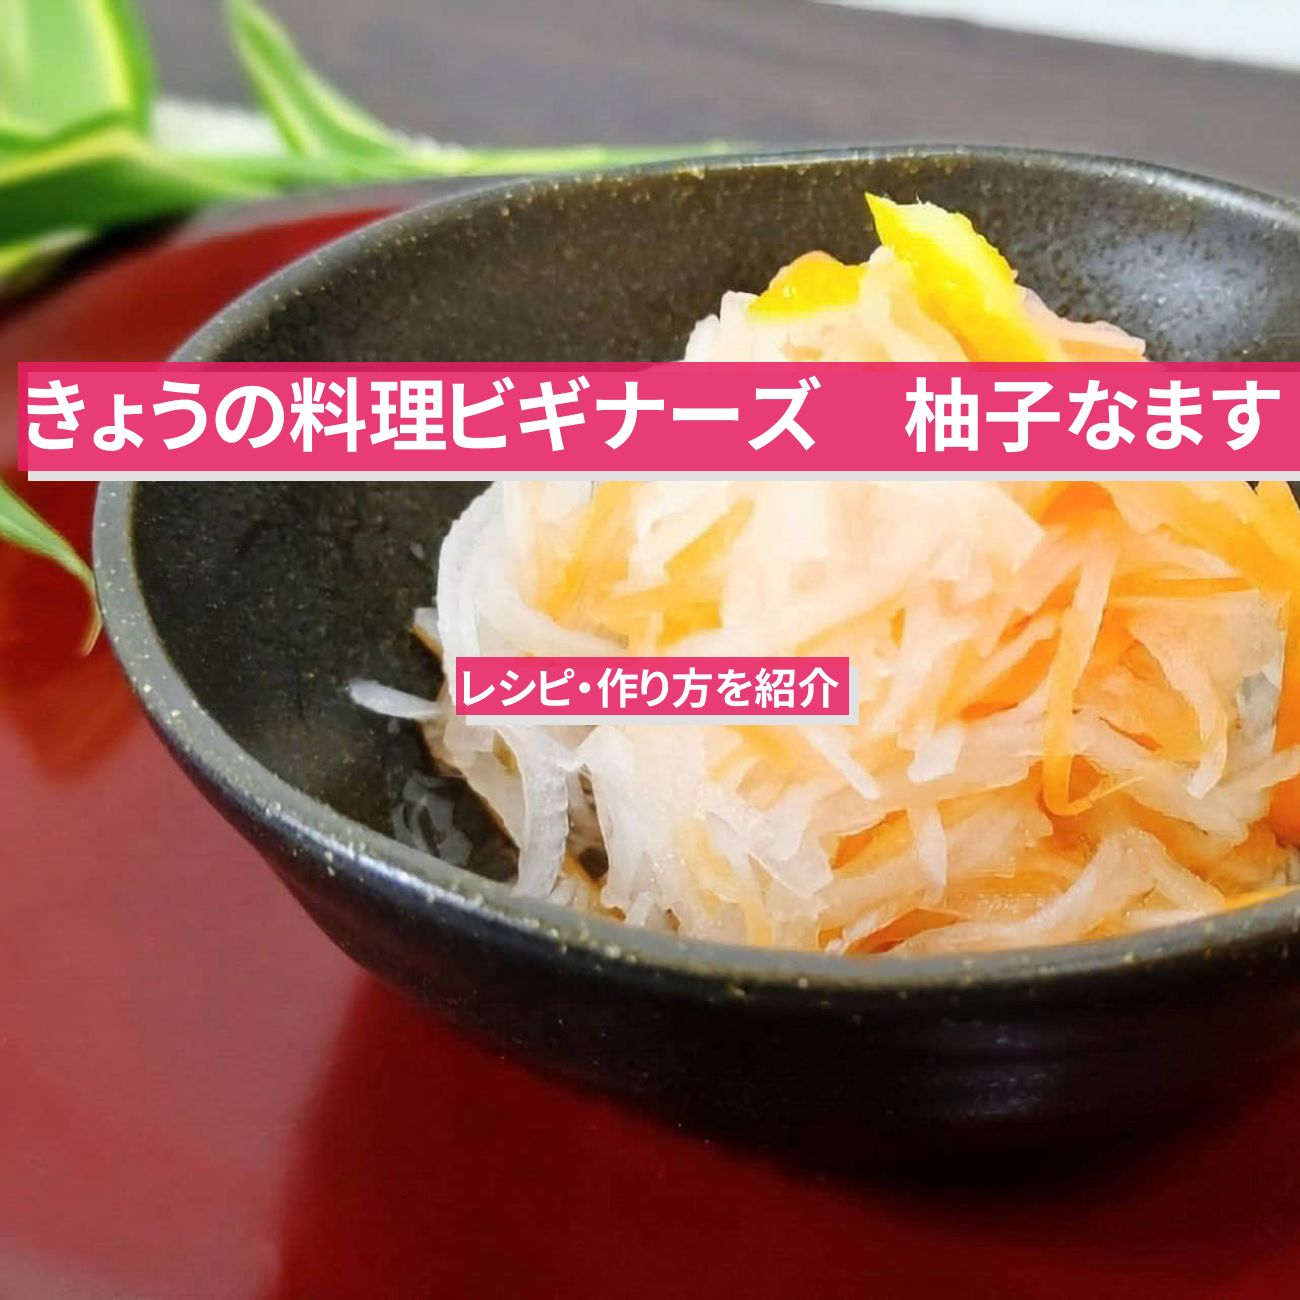 【きょうの料理ビギナーズ】『柚子なます』レシピ・作り方を紹介